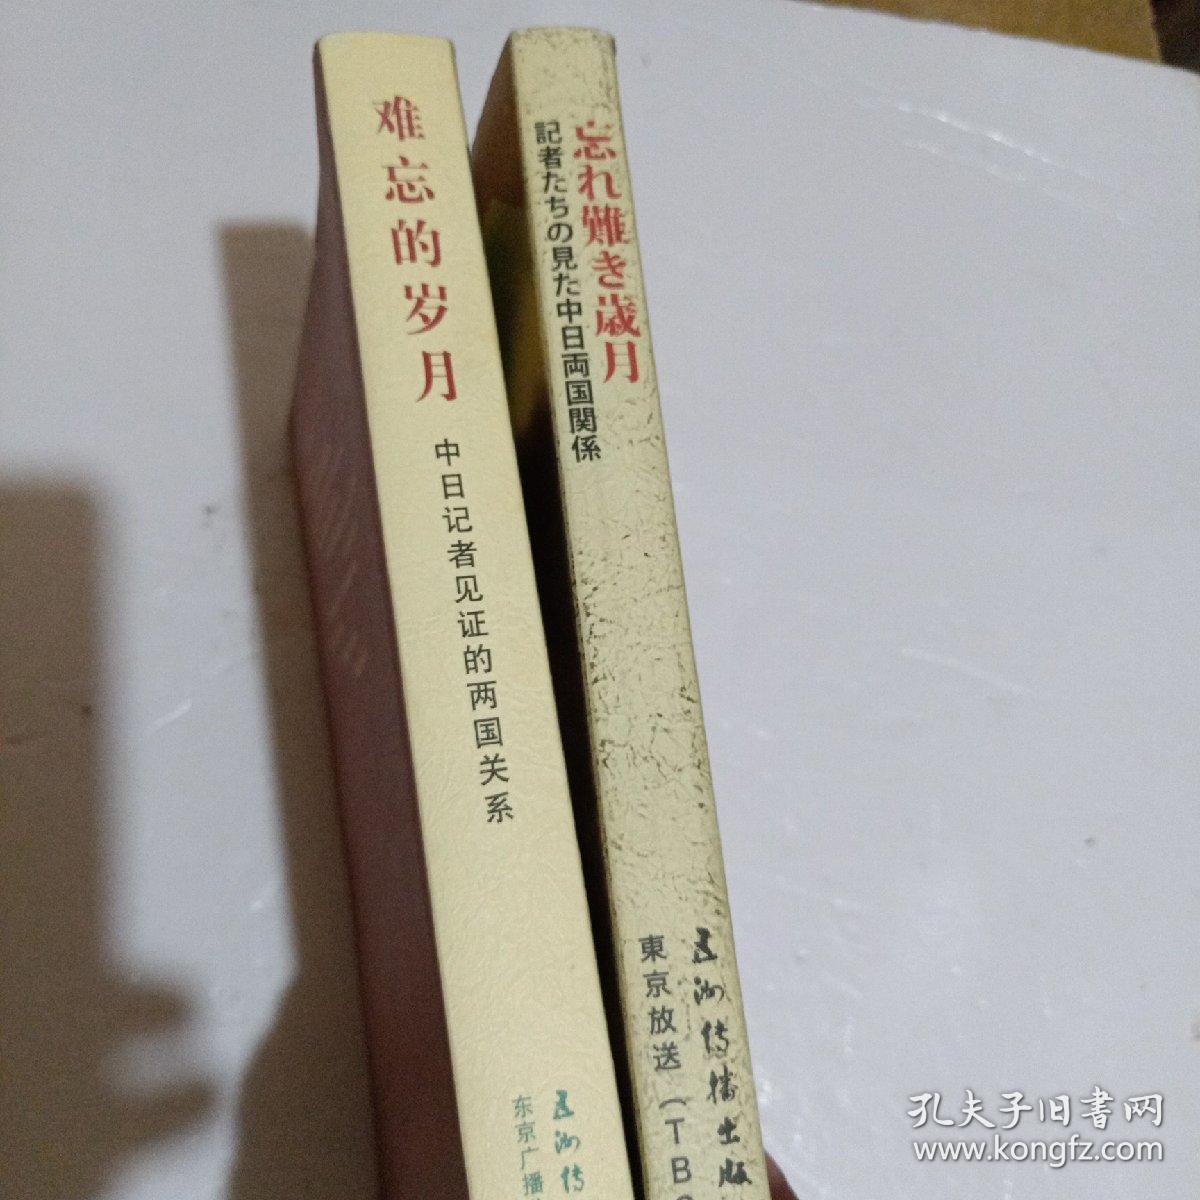 难忘的岁月：中日记者见证的两国关系（中文版）和 【日文版】 2本合售